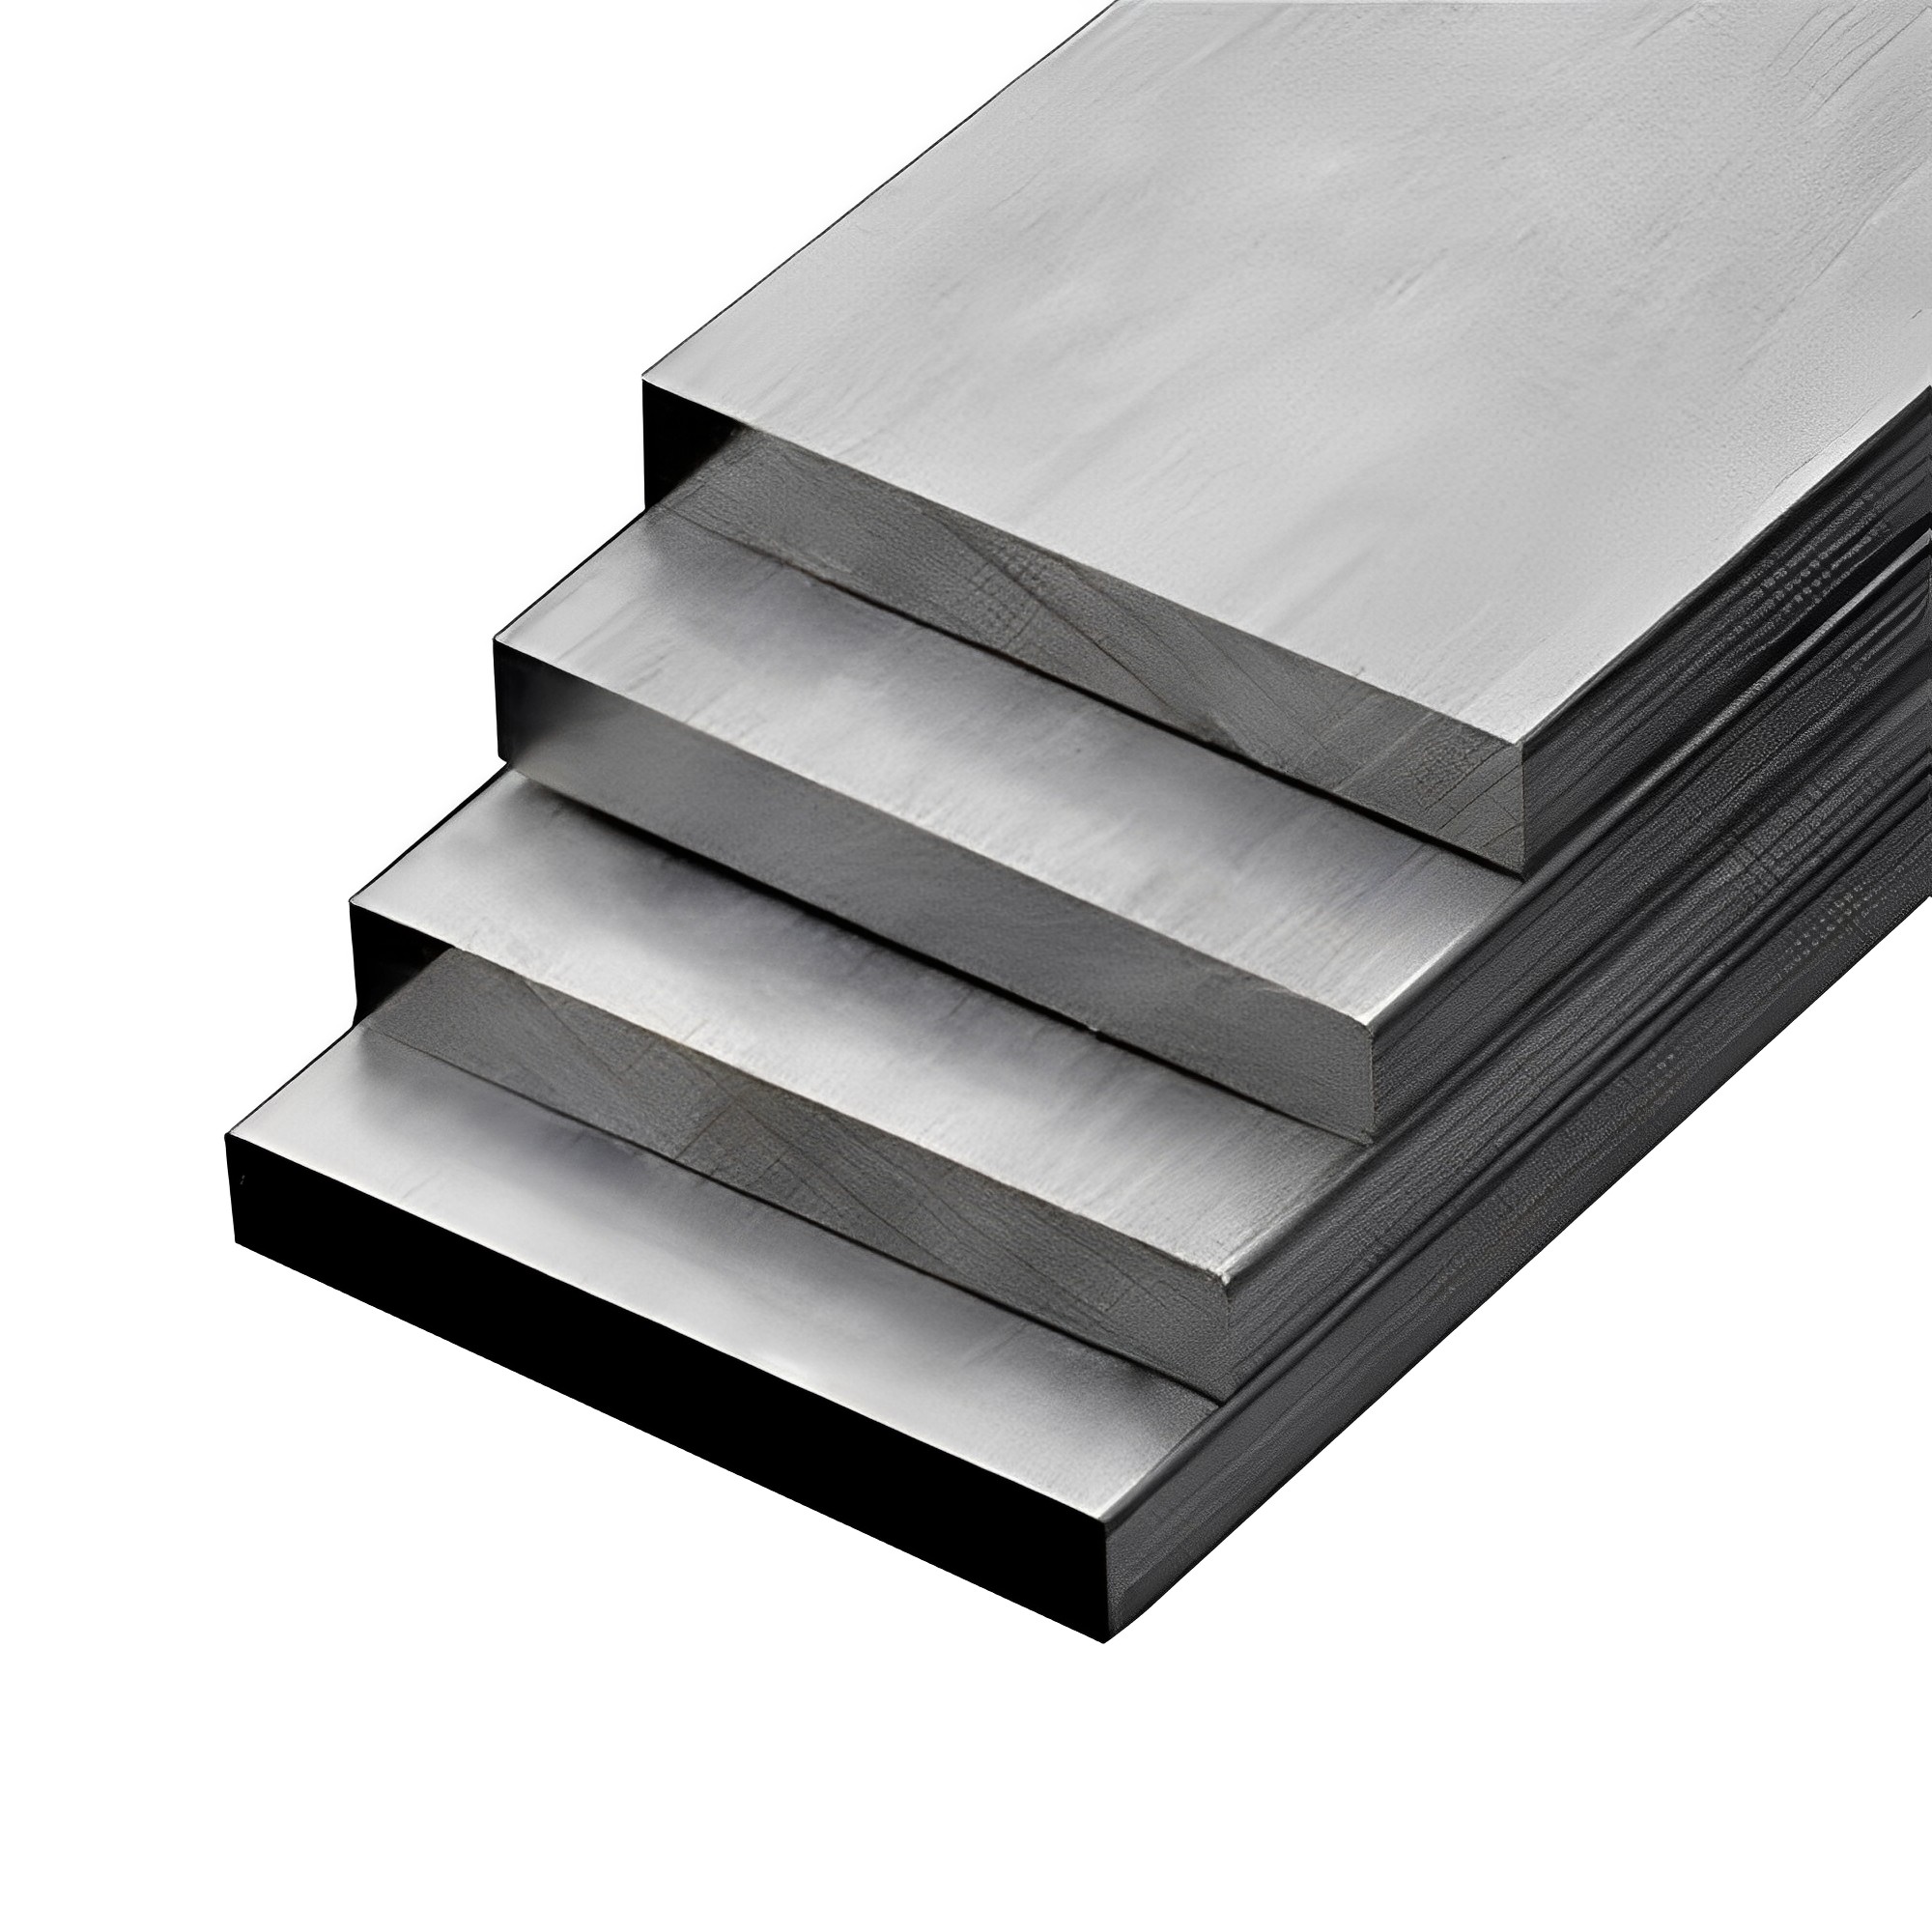 6061铝排铝条铝方条铝扁条铝型